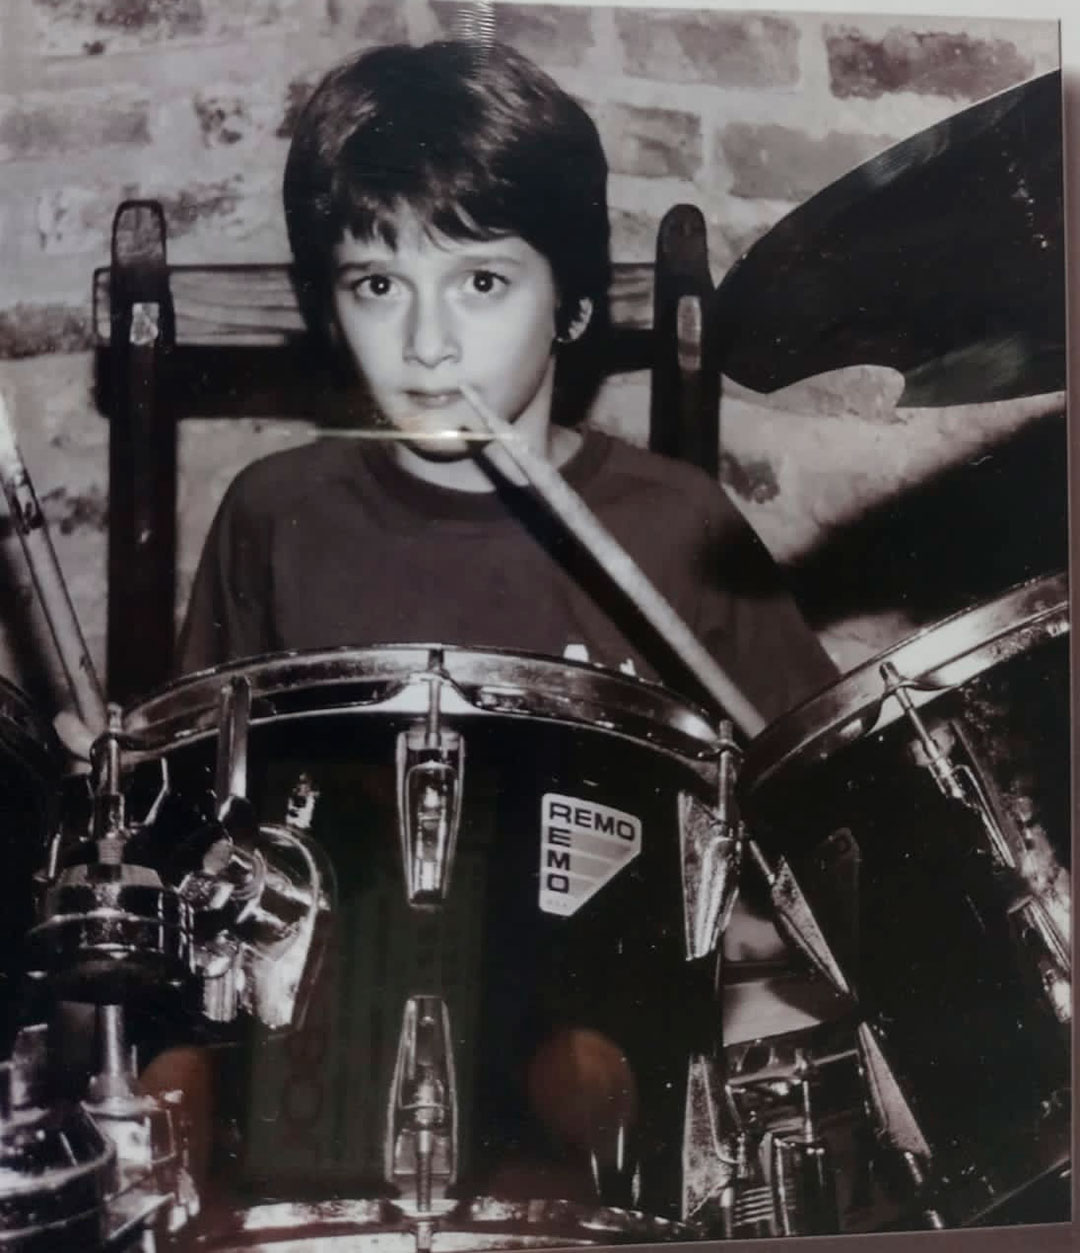 Mariano en sus inicios como músico con la batería roja que recibió como regalo de Navidad